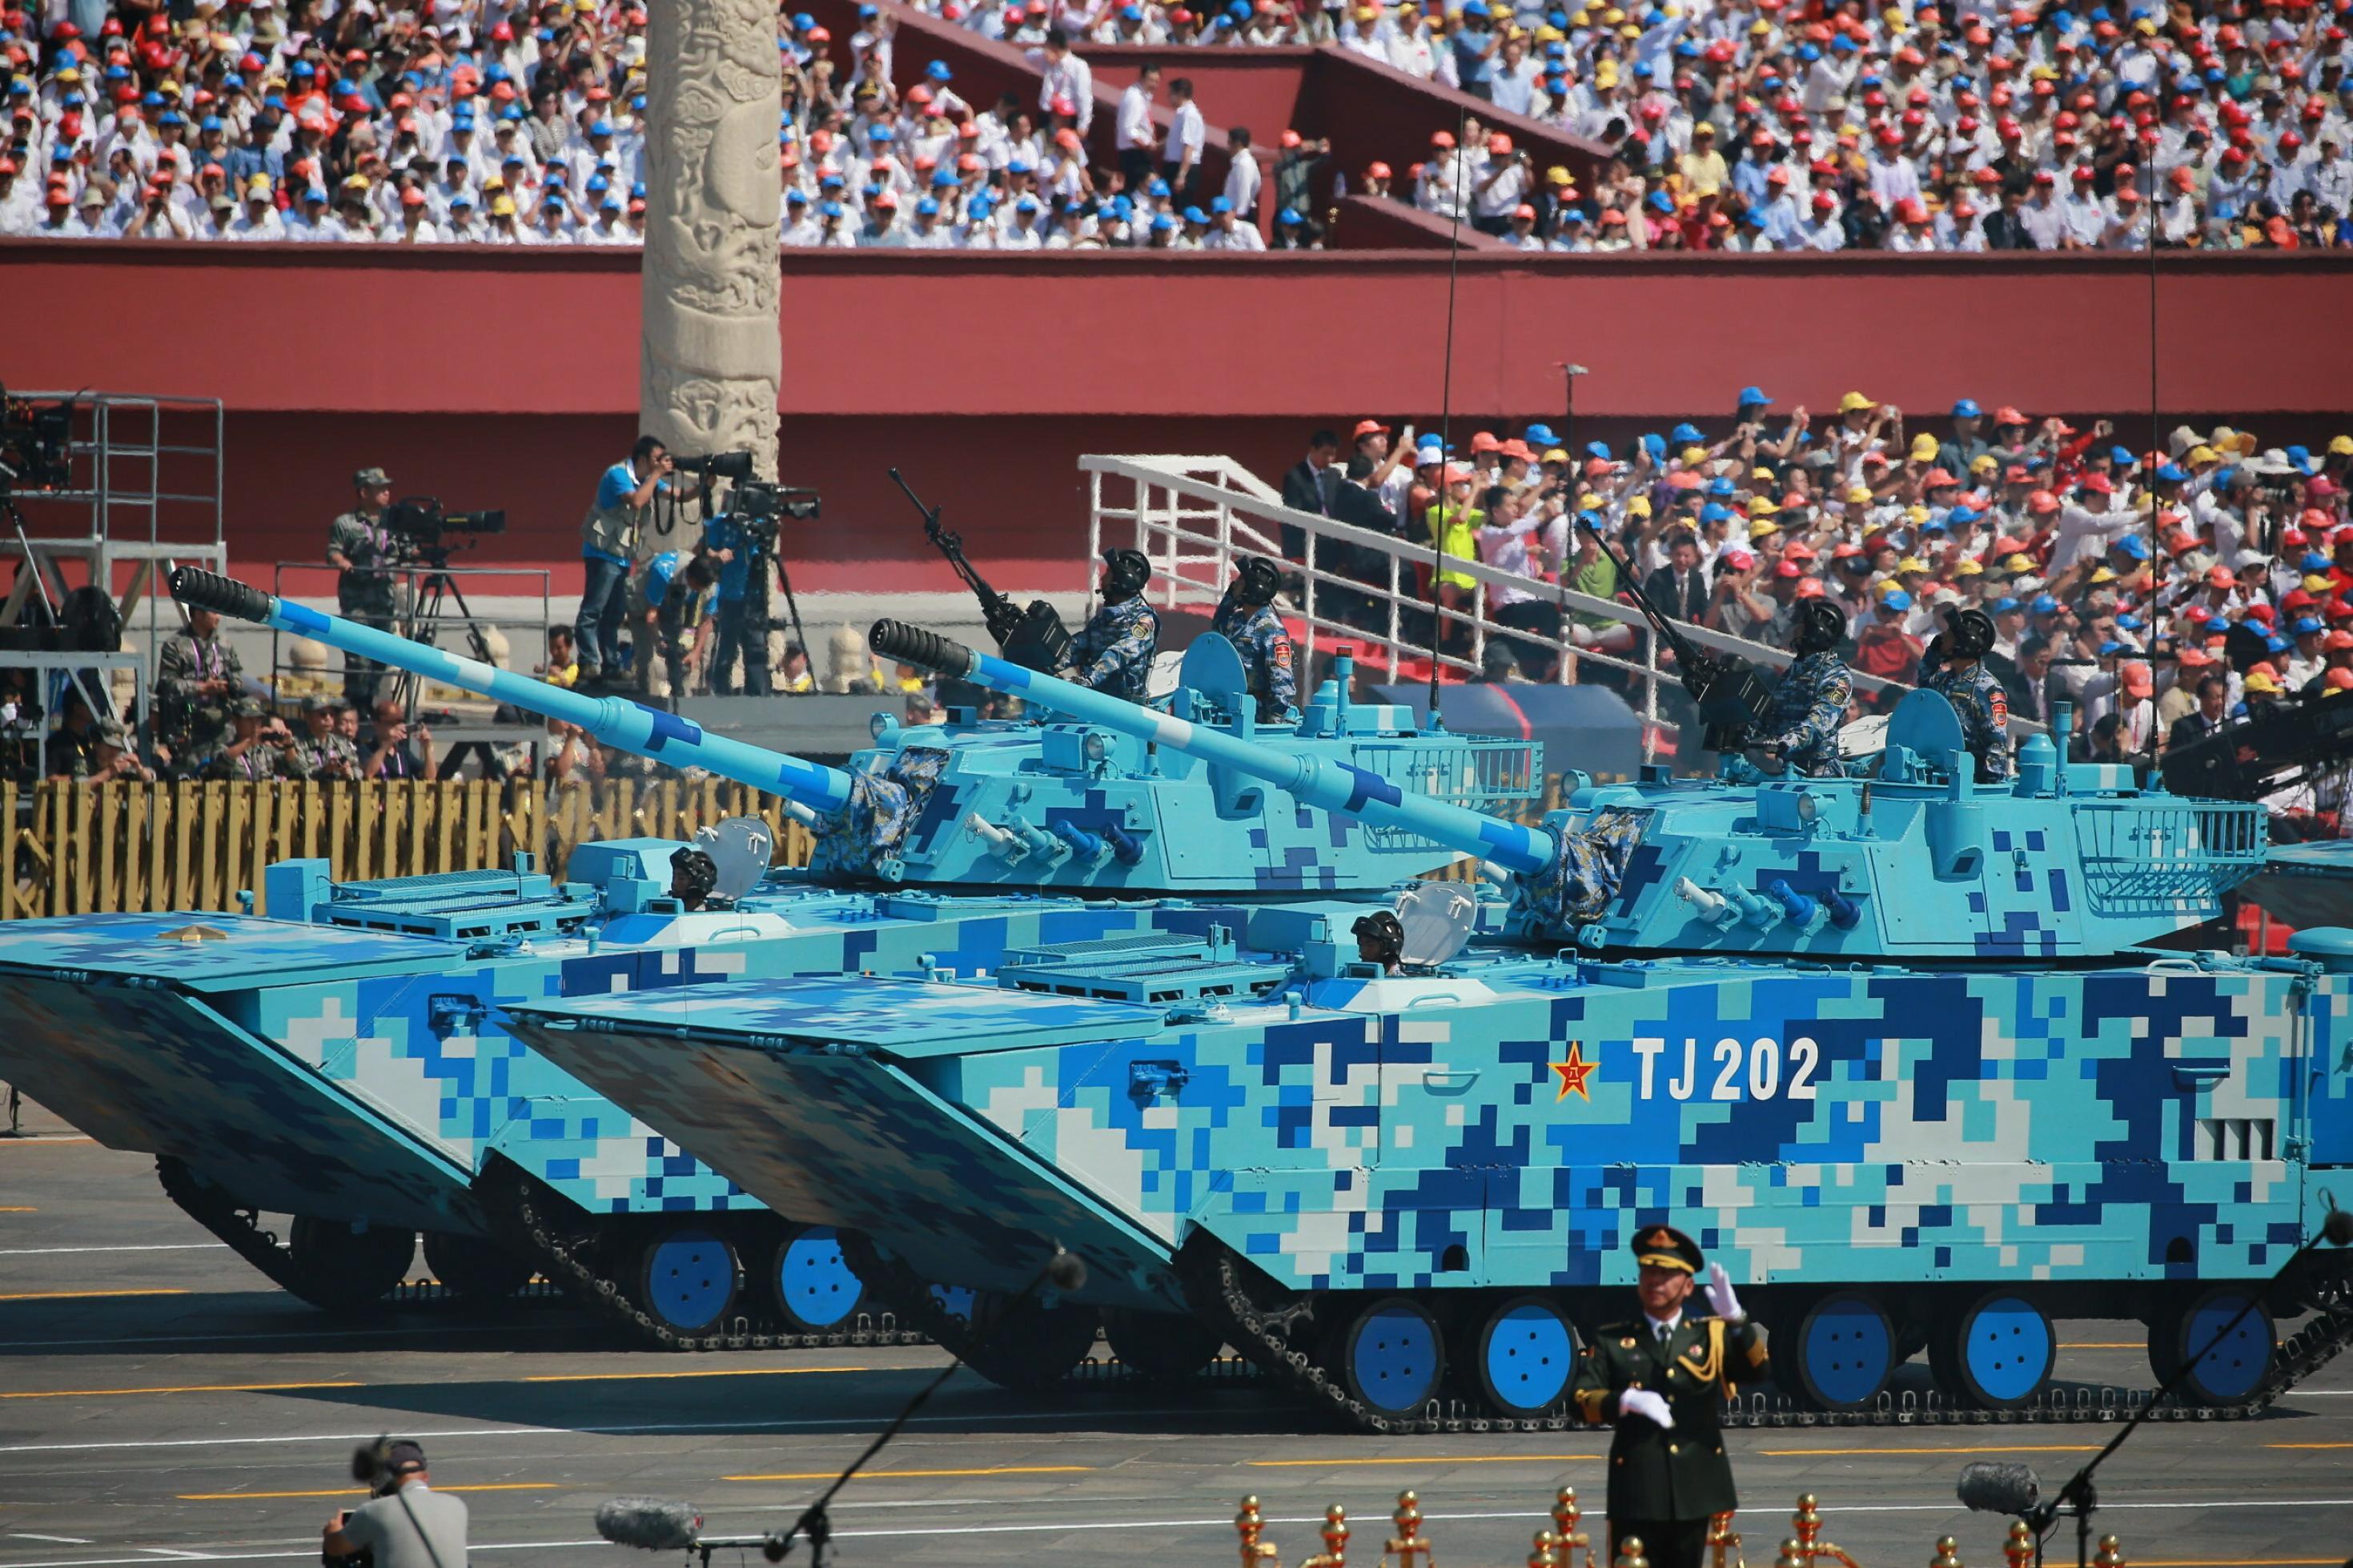 Zwei Panzer bei einer Militärparade, die nicht wie üblich grün, sondern in einem blauen Tarnmuster angestrichen sind.